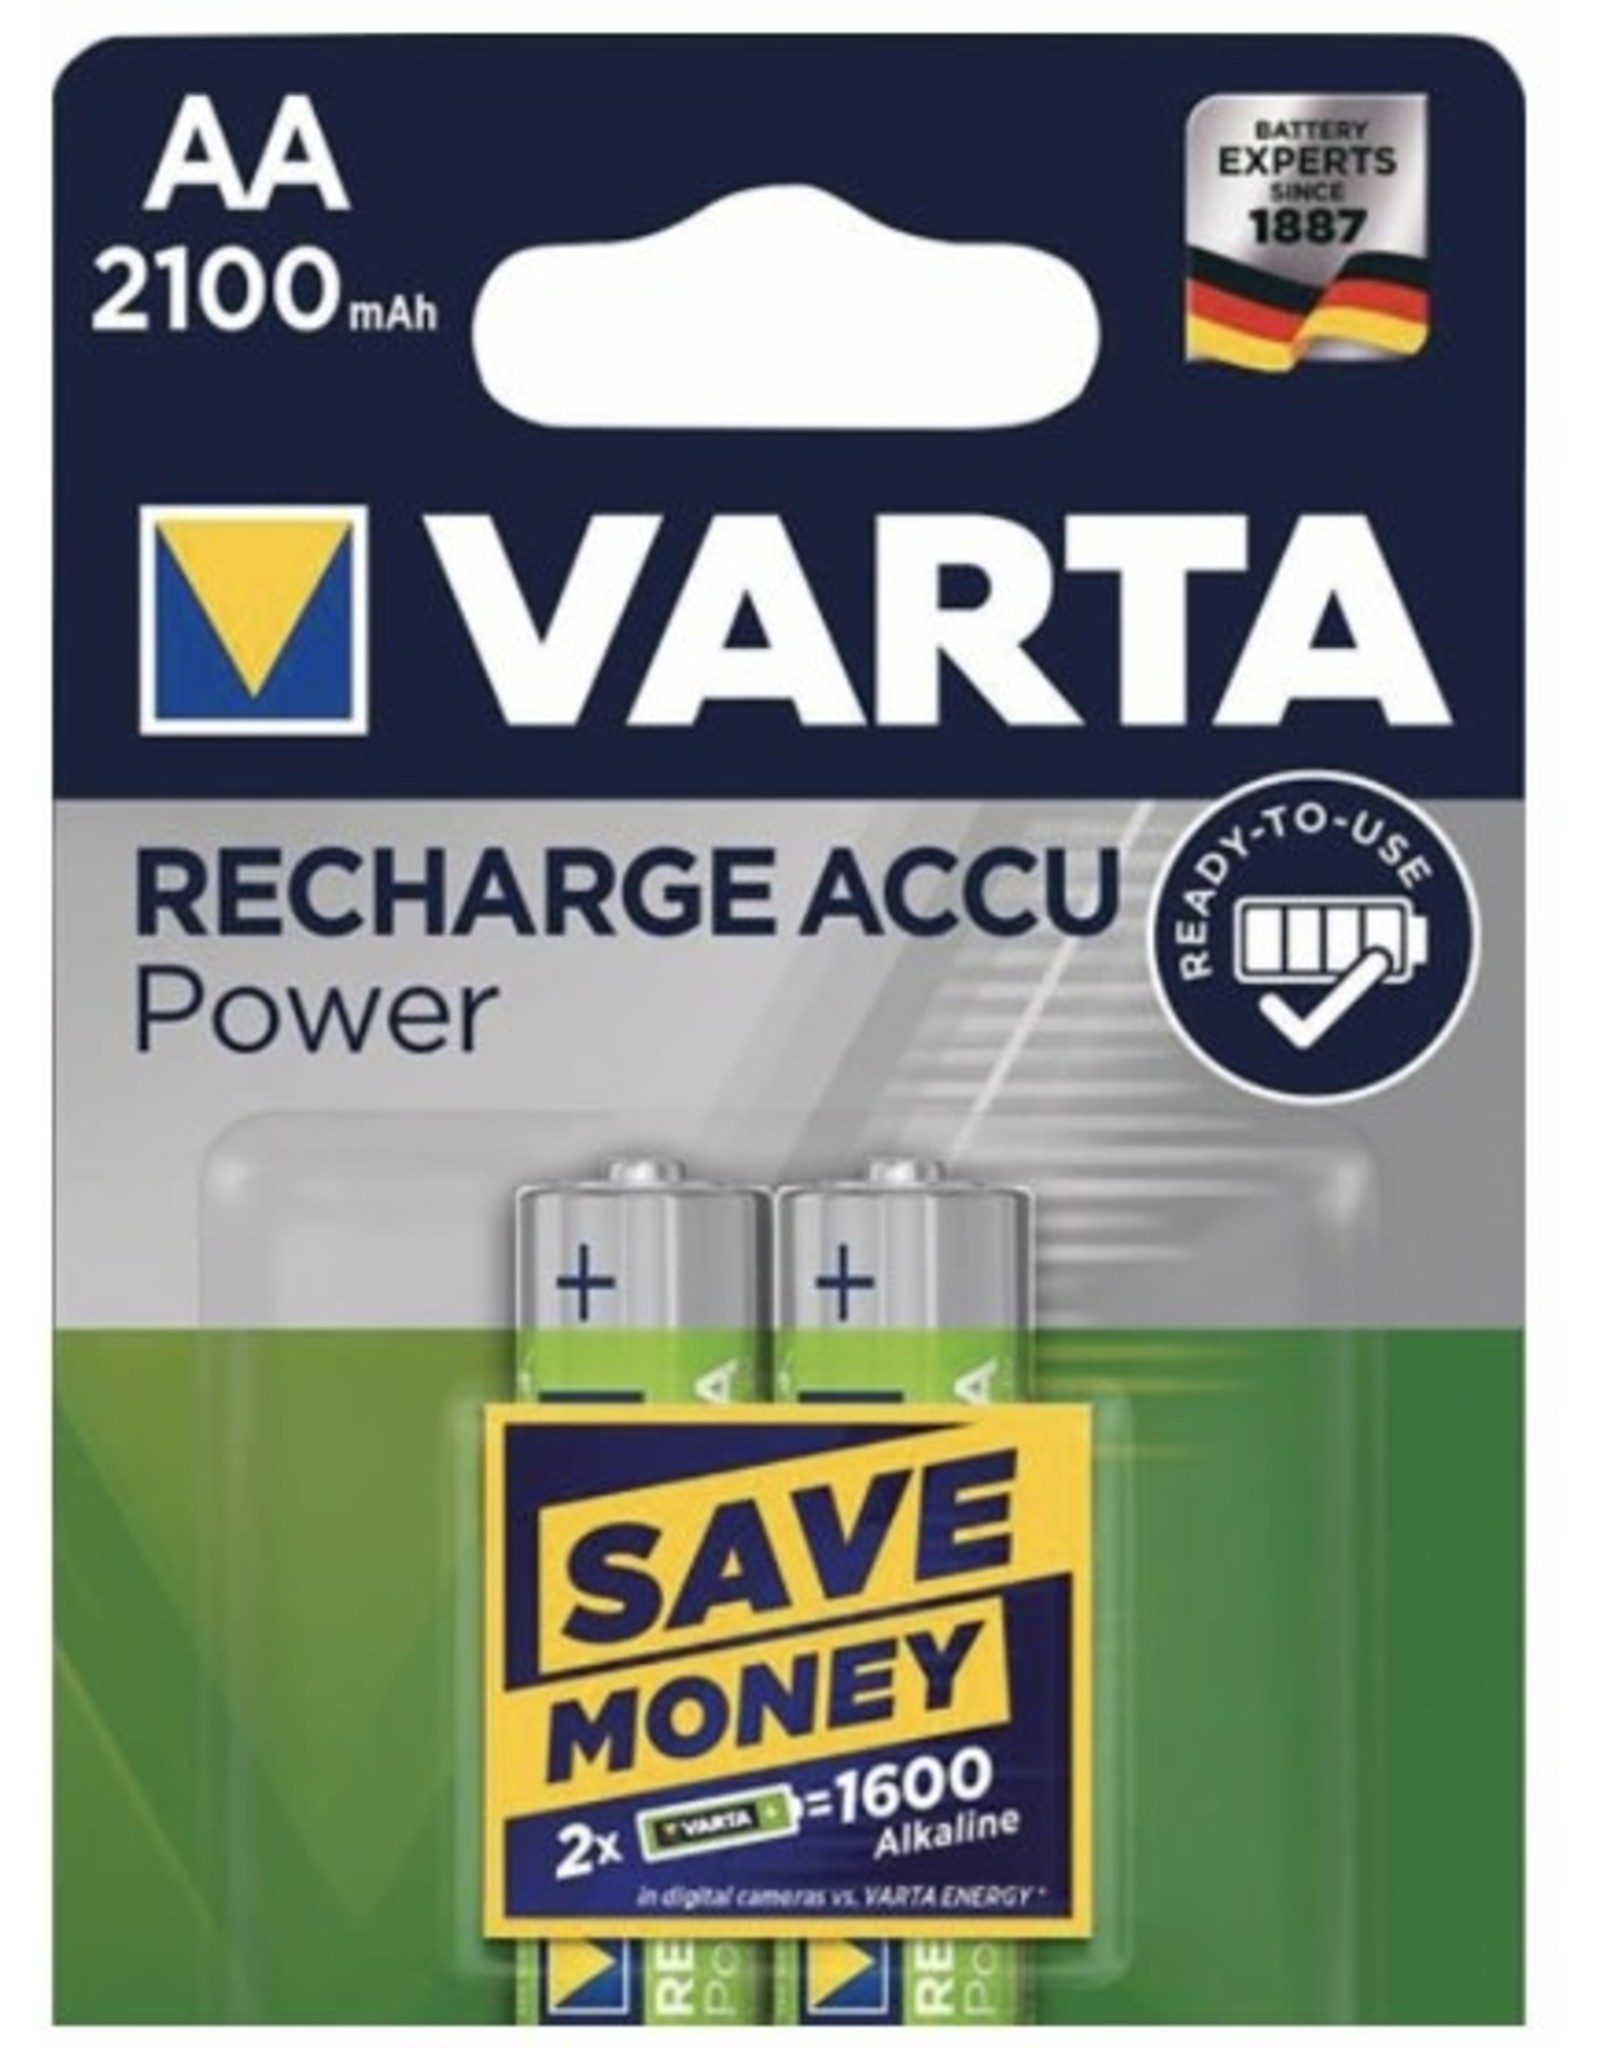 VARTA VARTA Rechargeable Power Accu 2x 1600